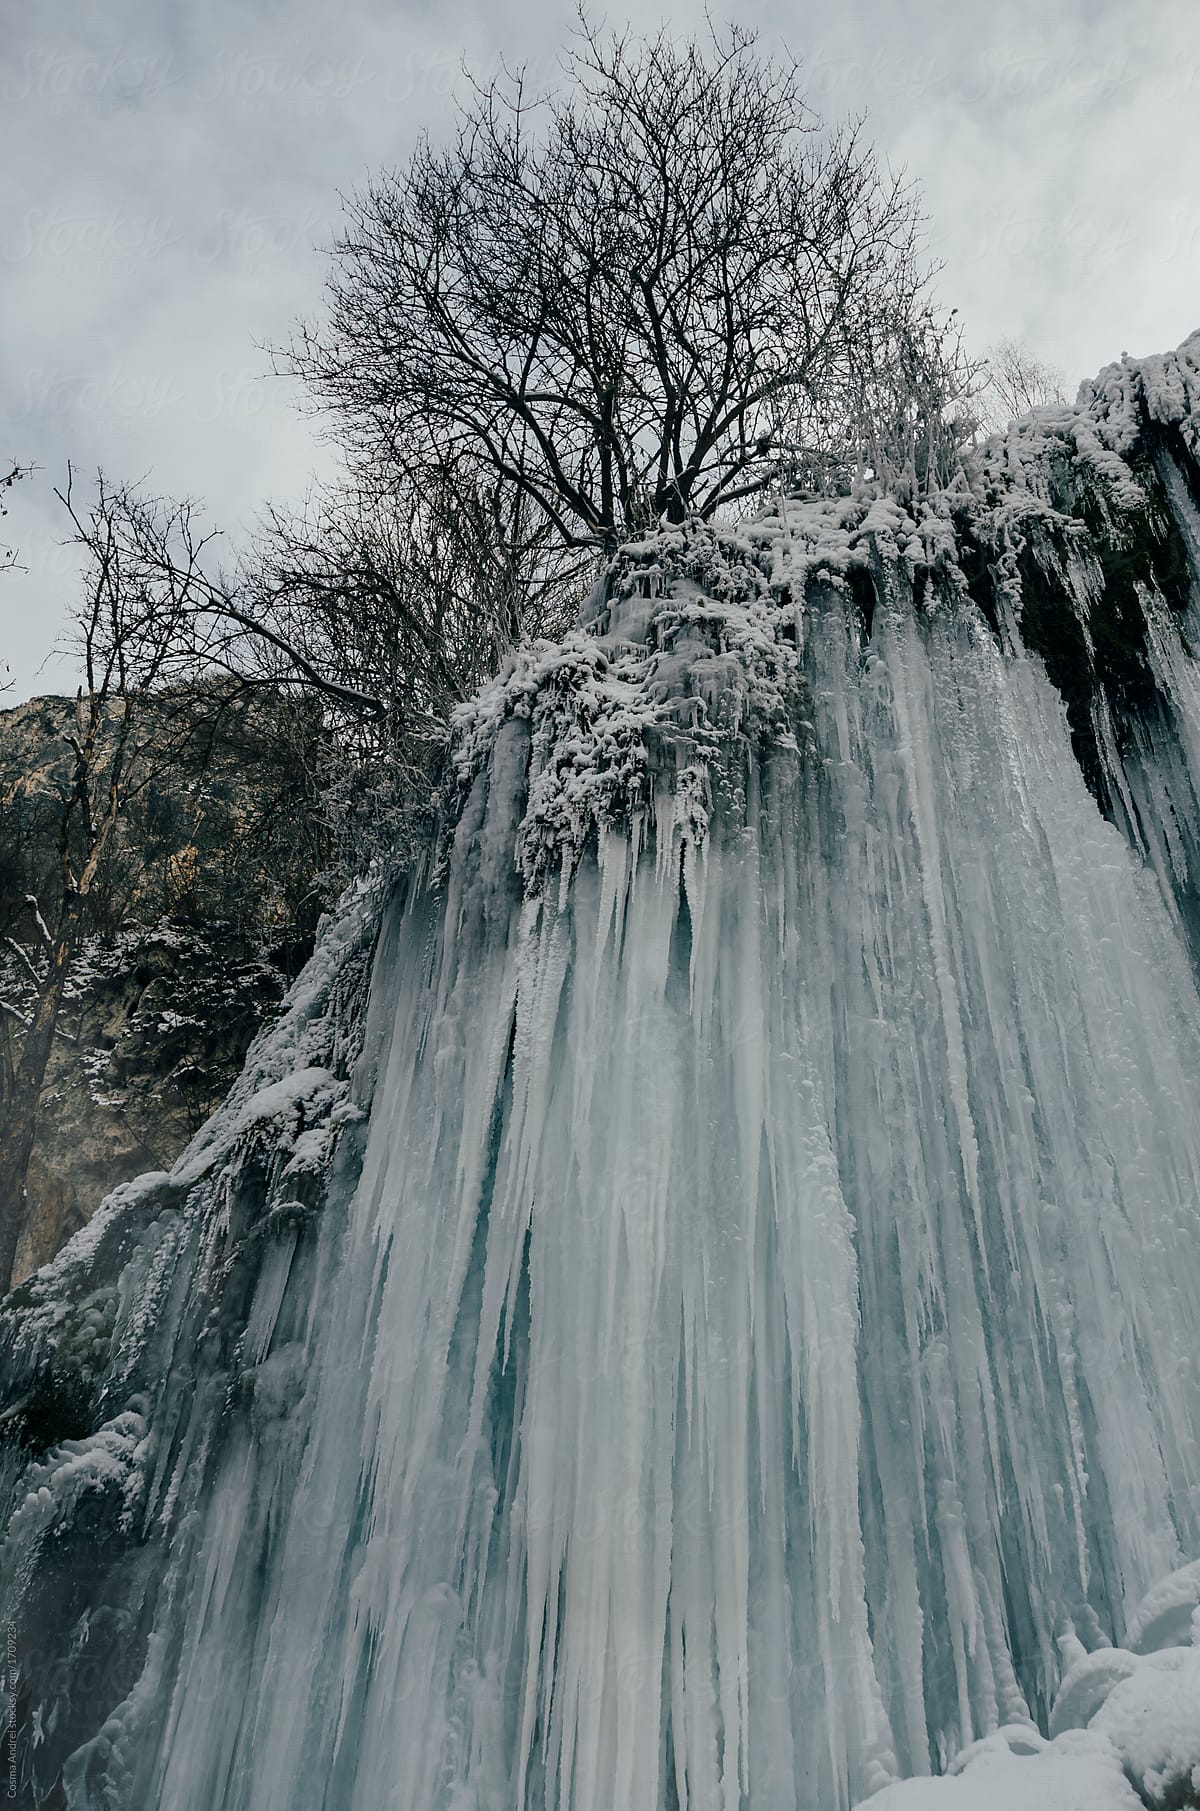 Frozen waterfall in cold winter wonderland